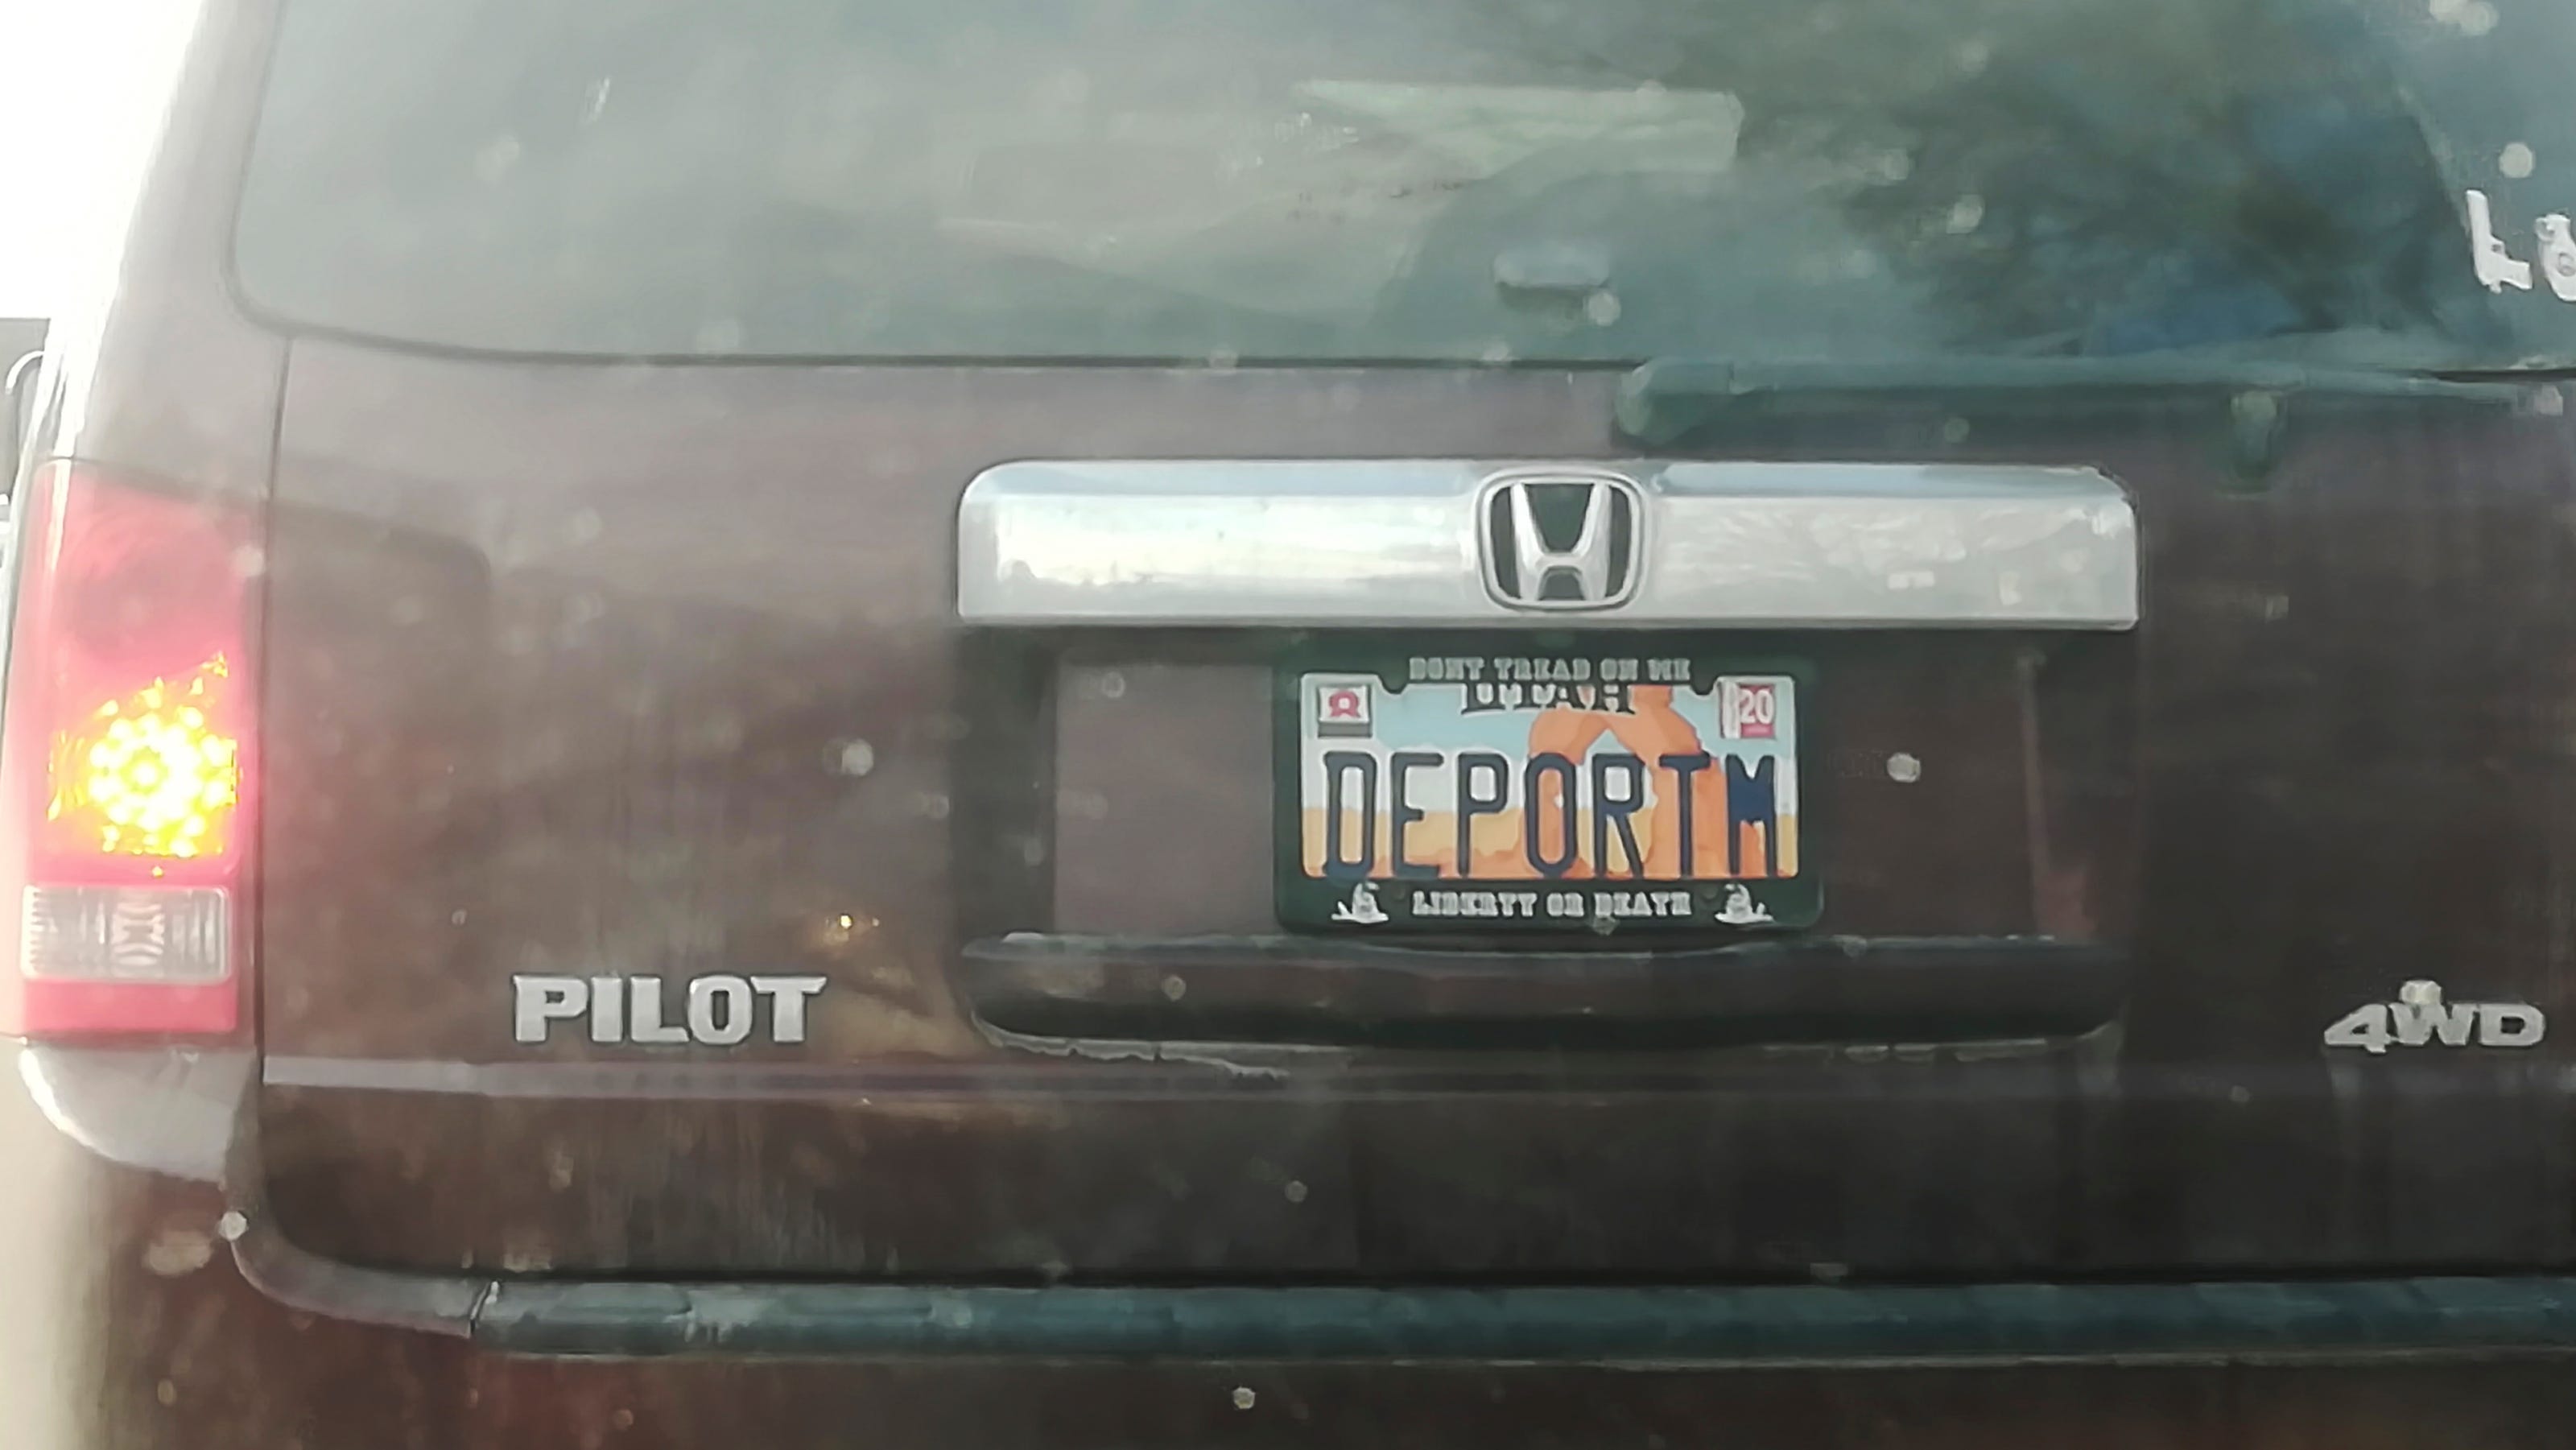 'DEPORTM' vanity license plate Utah OKed it, lawmakers question it